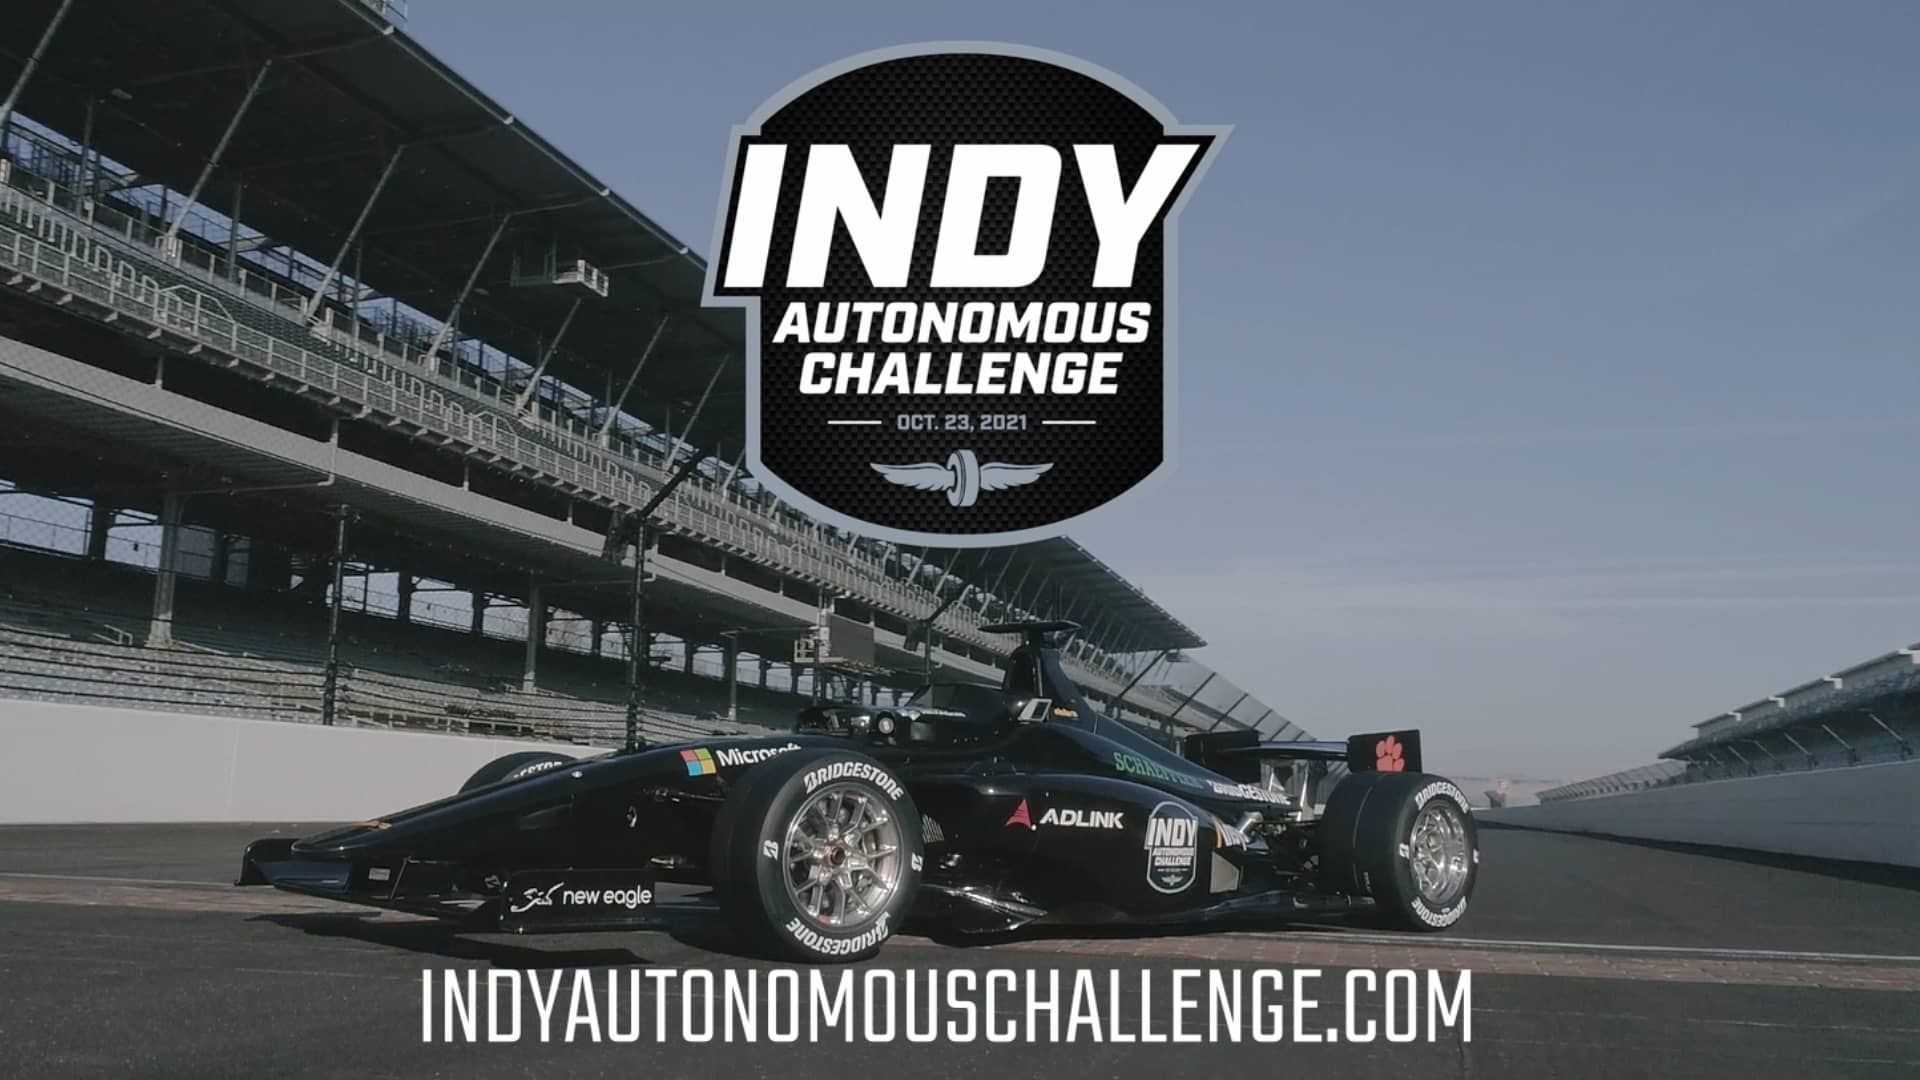 چالش خودرو خودران ایندی کار / IndyCar Autonomous Series در پیست ایندیاناپولیس 